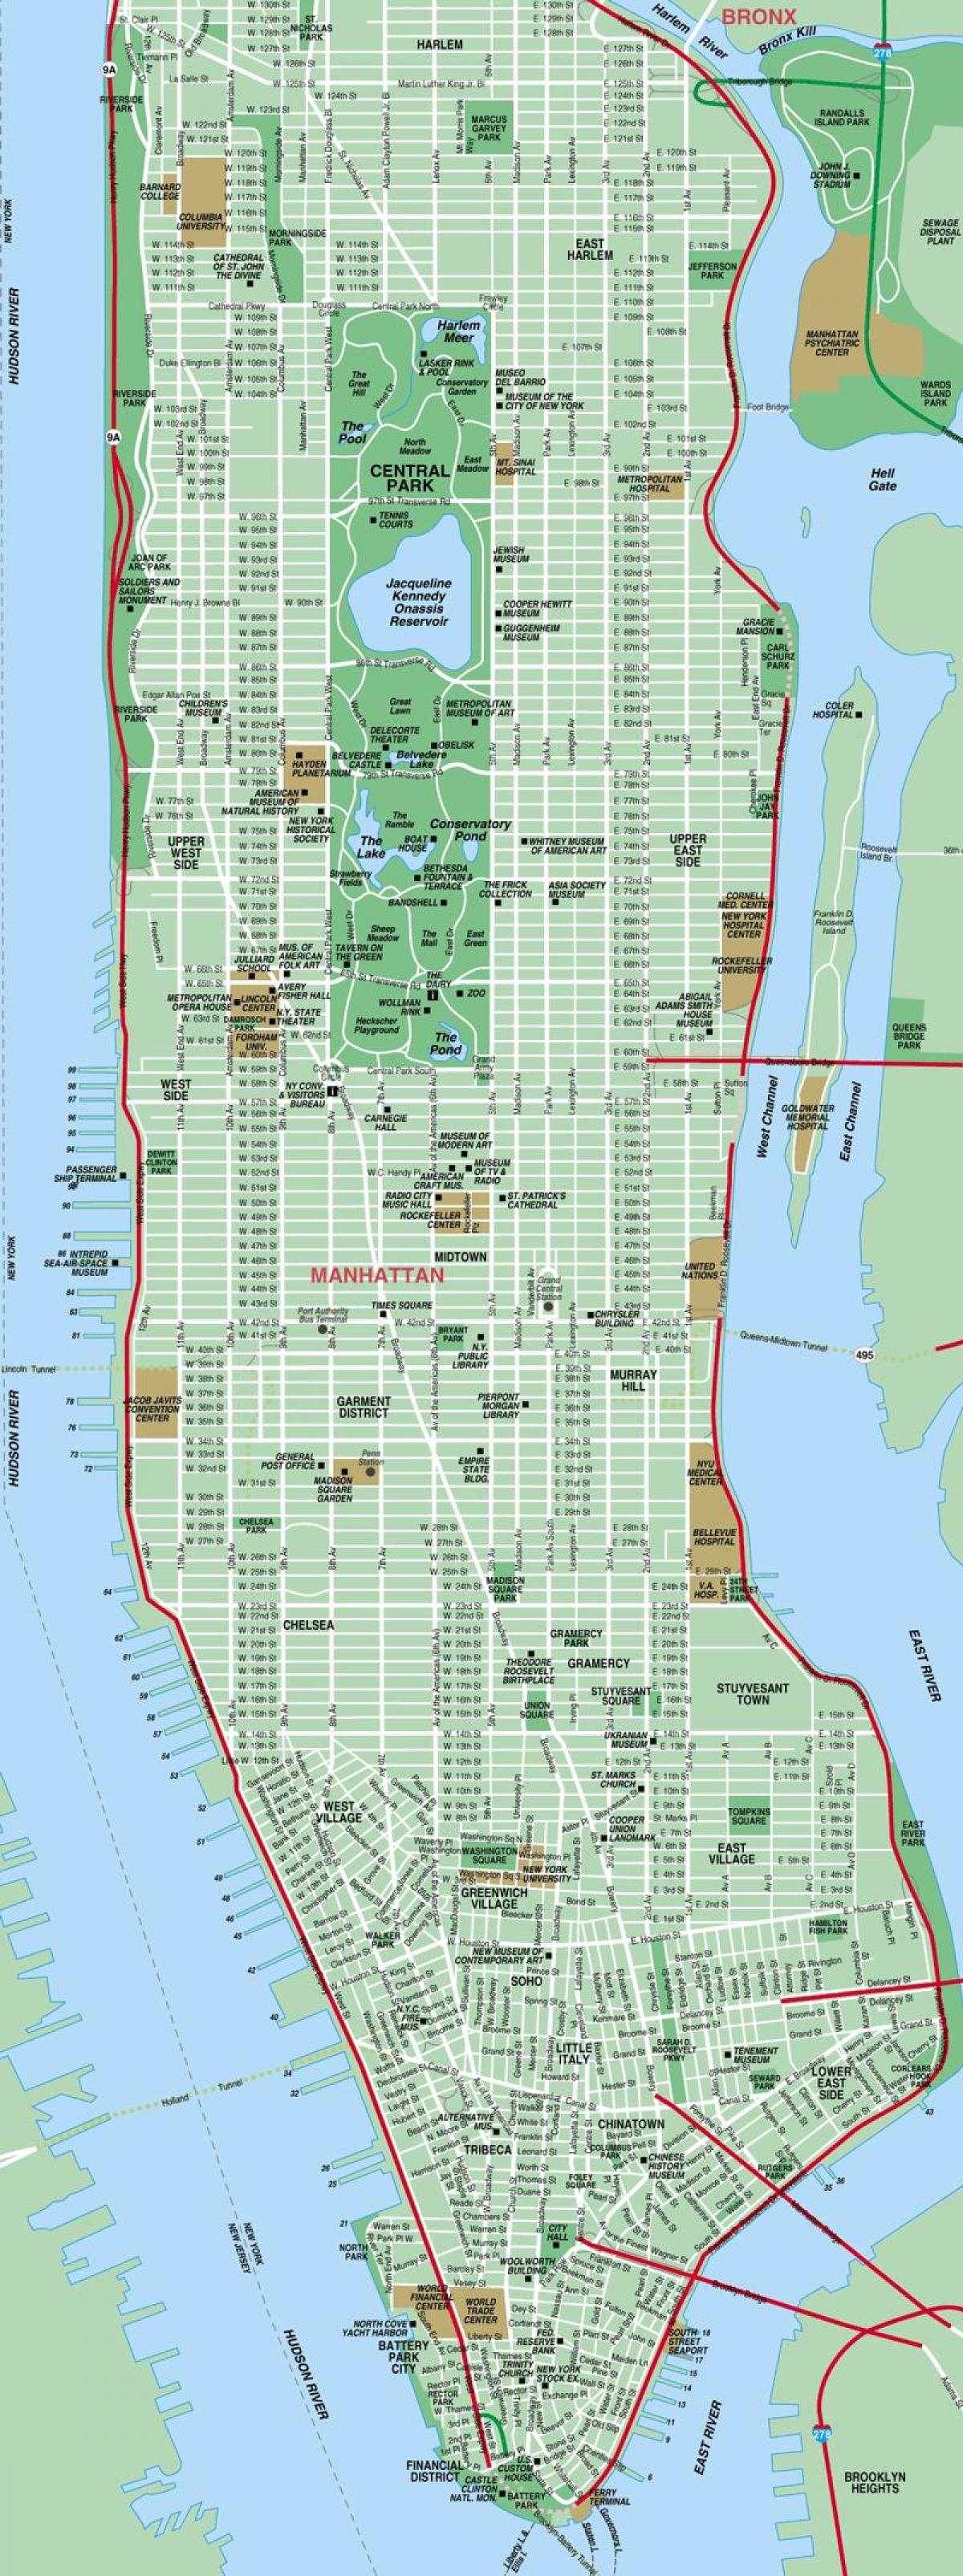 Manhattan ulica na karti visoke detalja